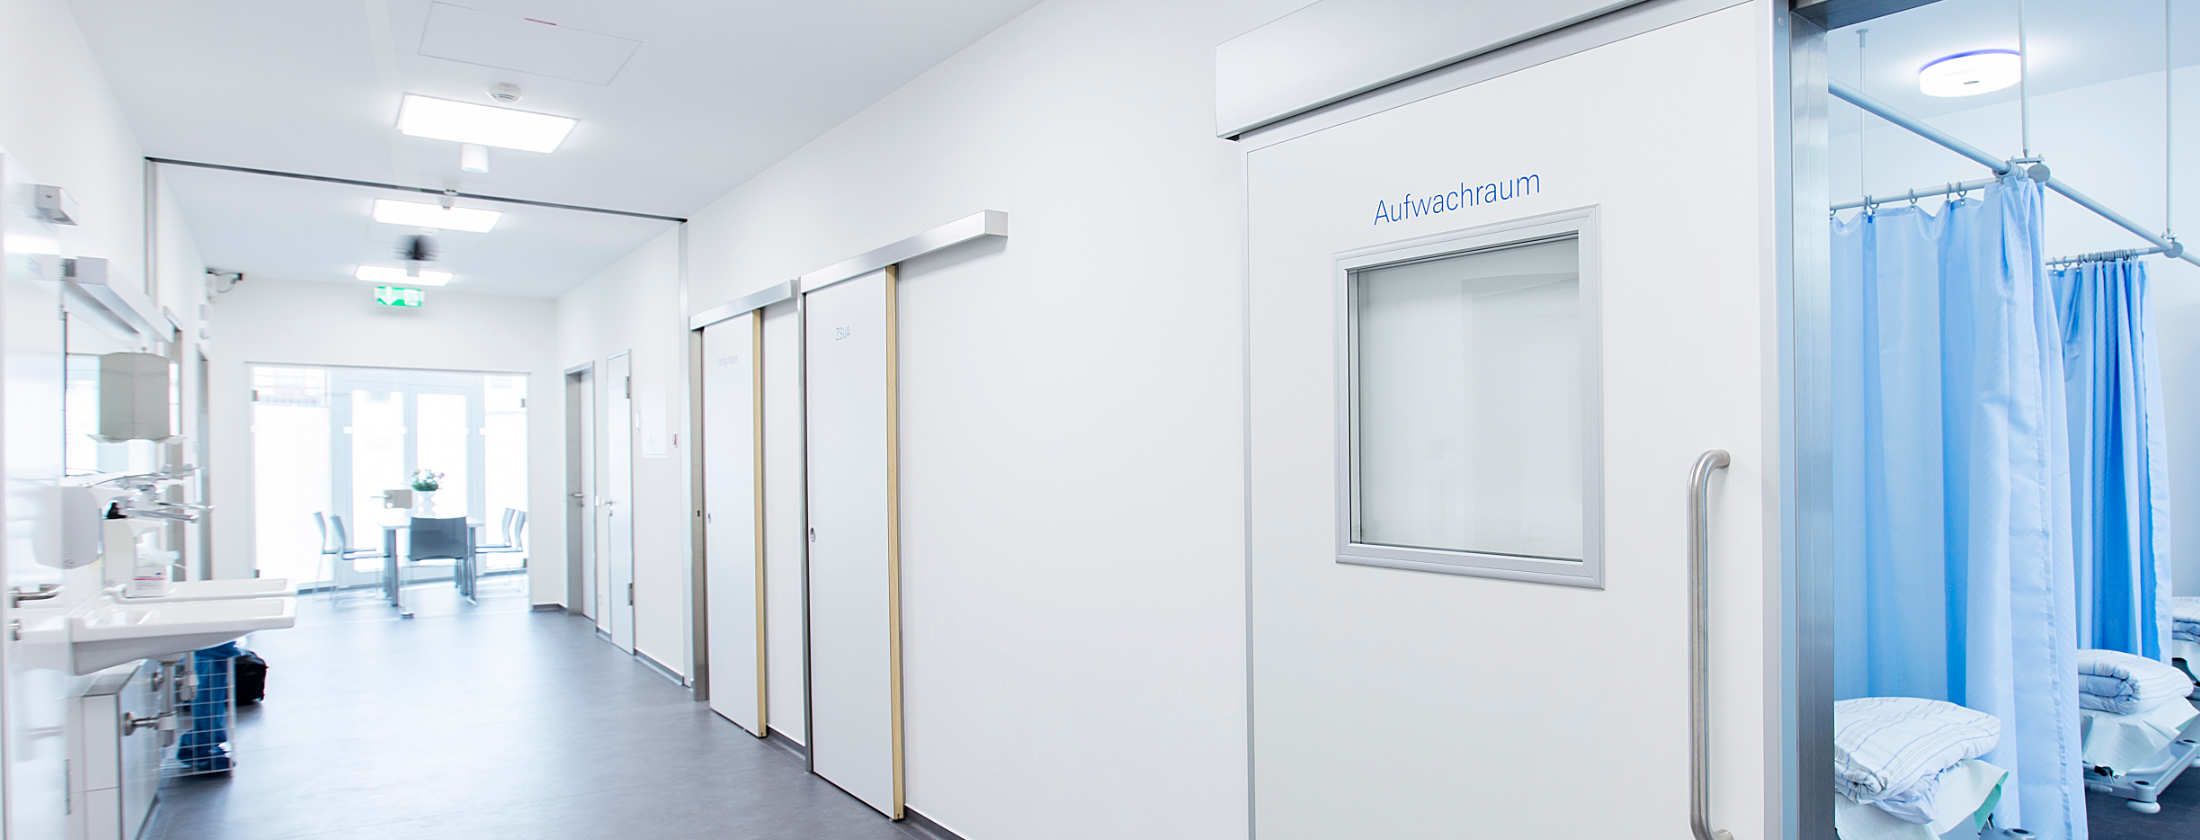 Langer heller Flur in der Berger Klinik Frankfurt. Türen sind an beiden Seiten. Flur der Privatklink endet mit wandgroßen Fenstern. Geöffnete Tür mit der Aufschrift Aufwachraum gewährt einen Blick in einen Raum voller Betten für ambulante Patienten.